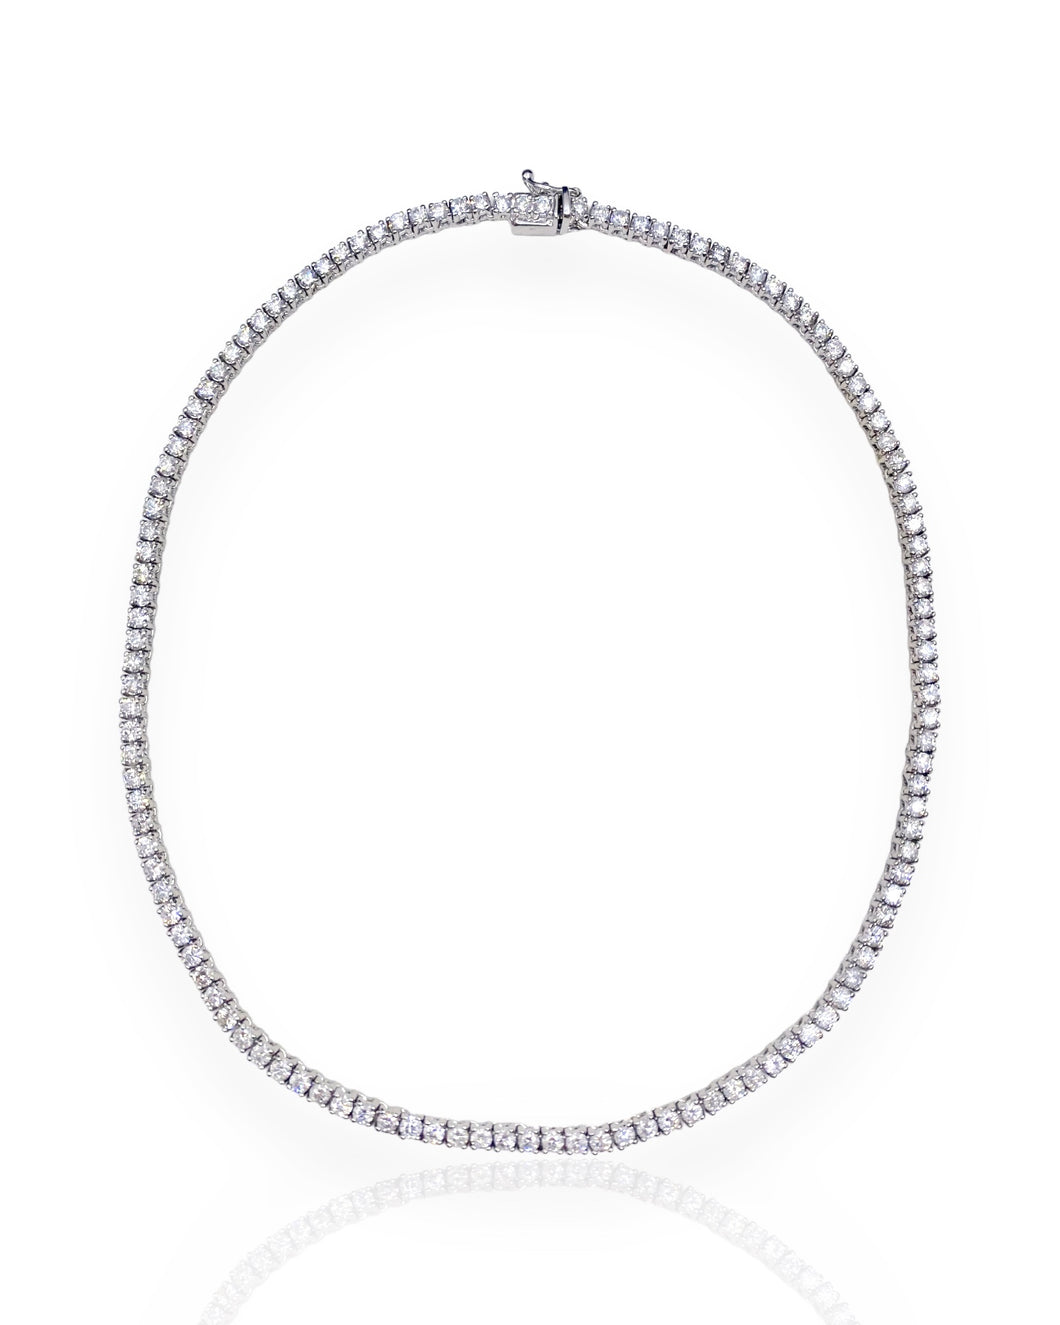 10k White Gold Diamond Tennis Necklace (15.75